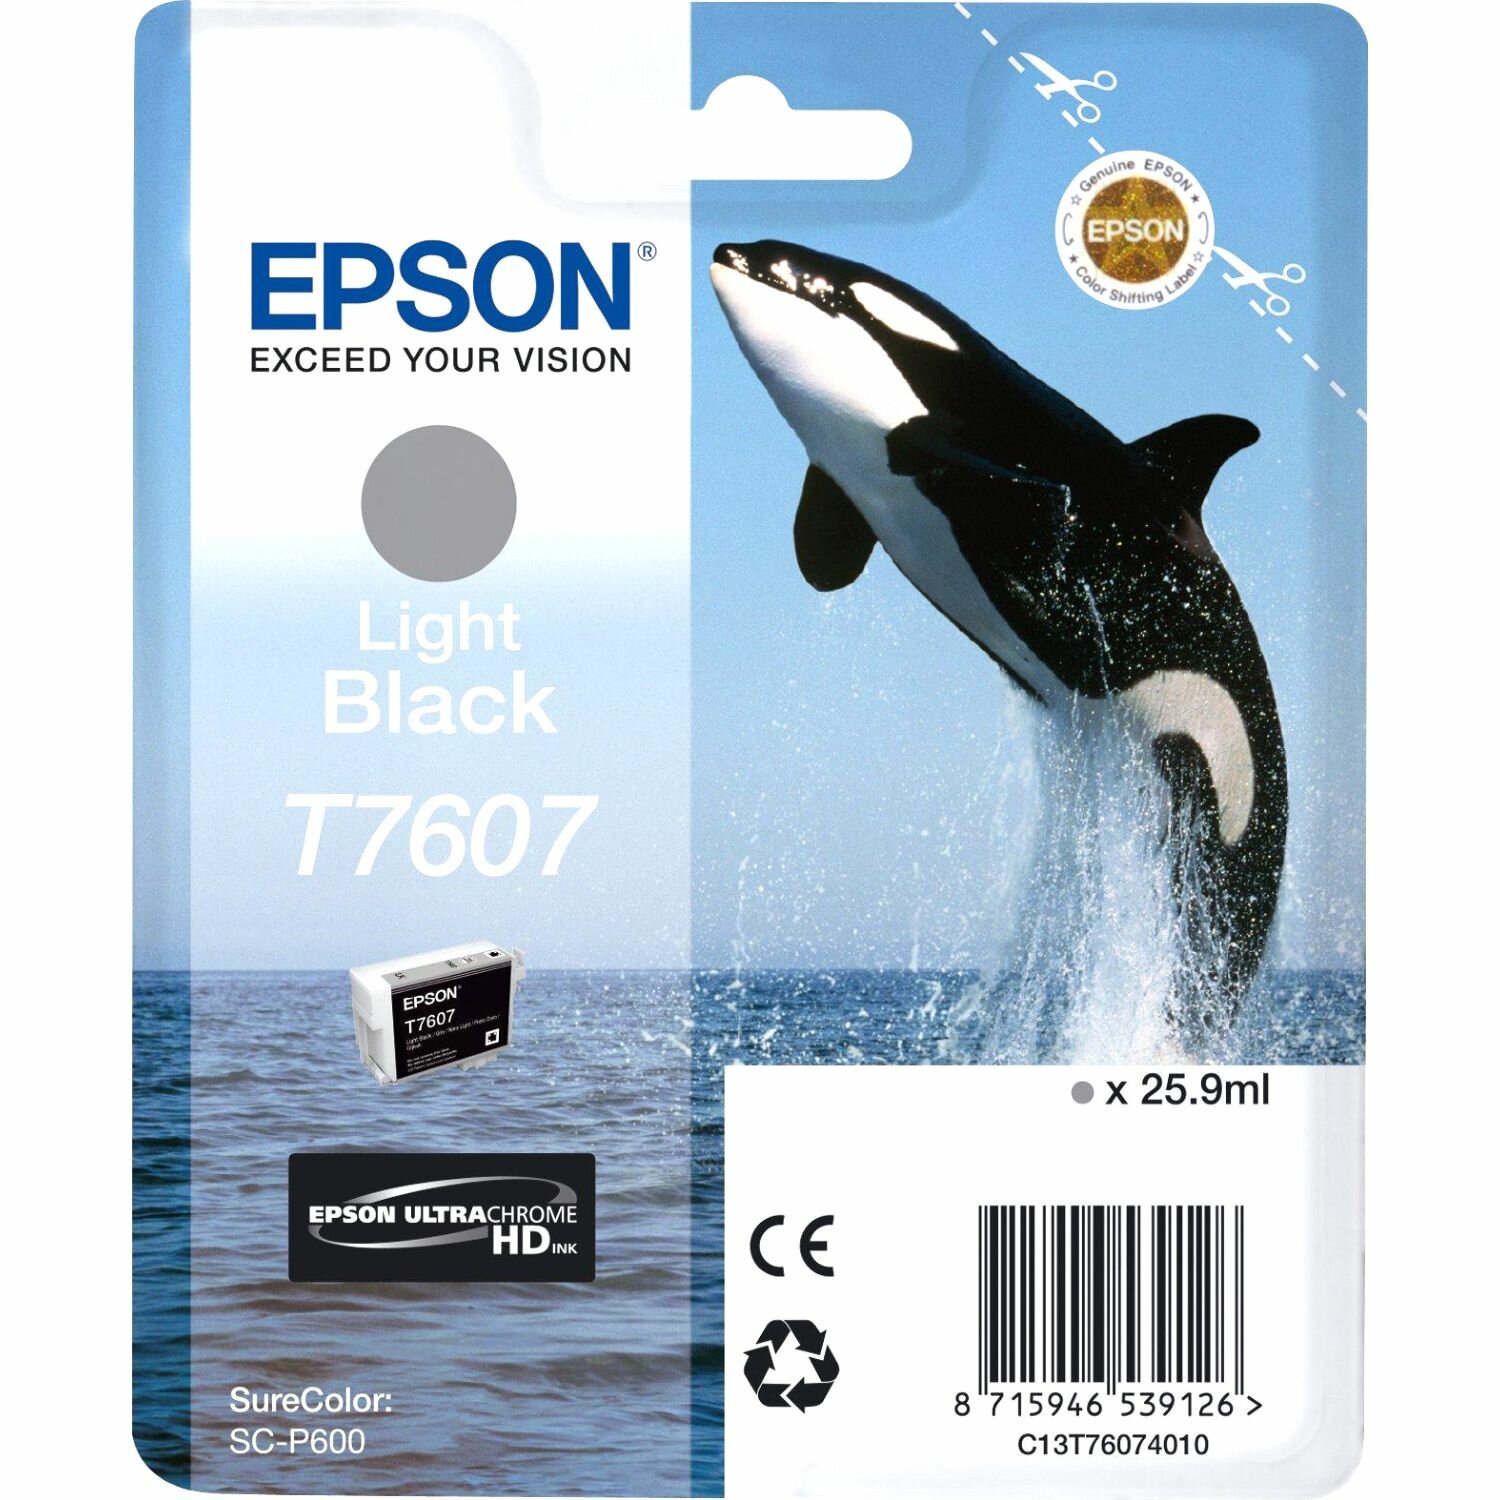 Картридж для струйного принтера EPSON T7607 Light Black (C13T76074010)